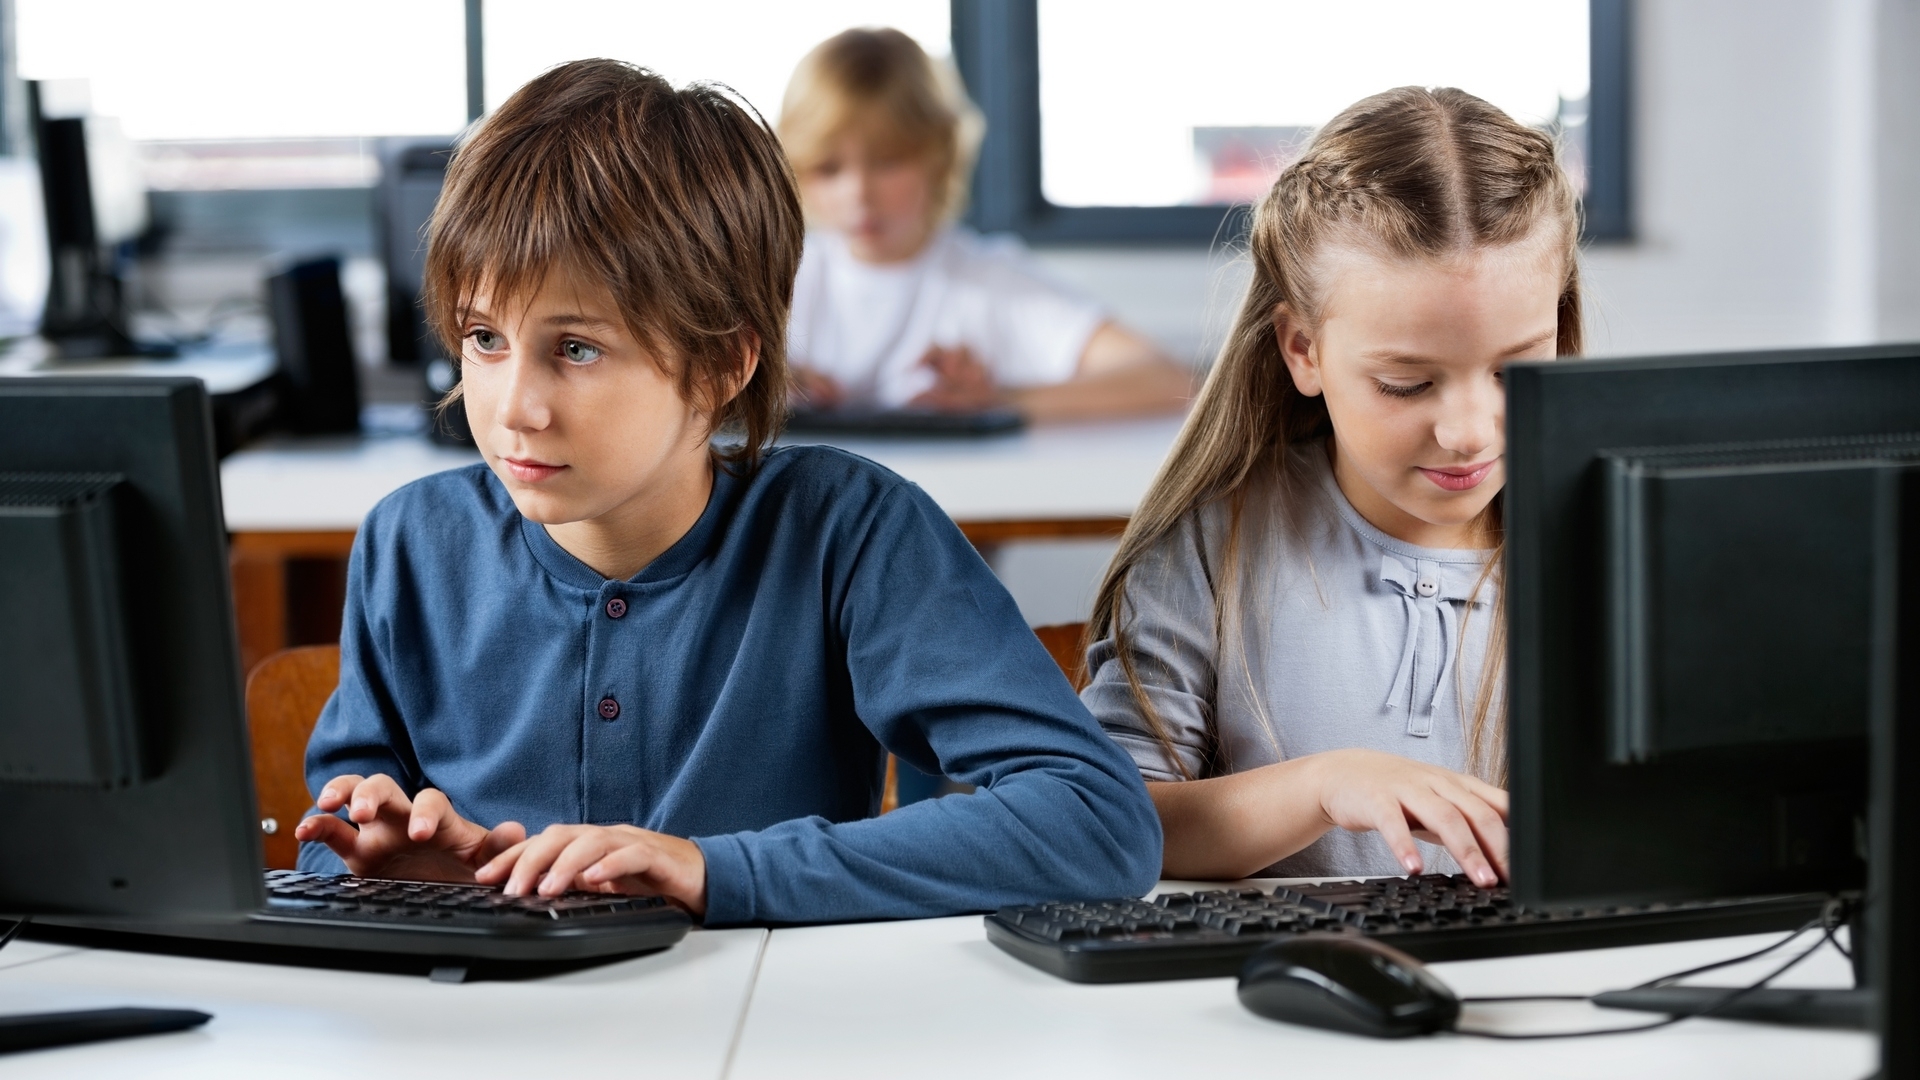 Депутат предложил учить детей в школах при помощи компьютерных игр